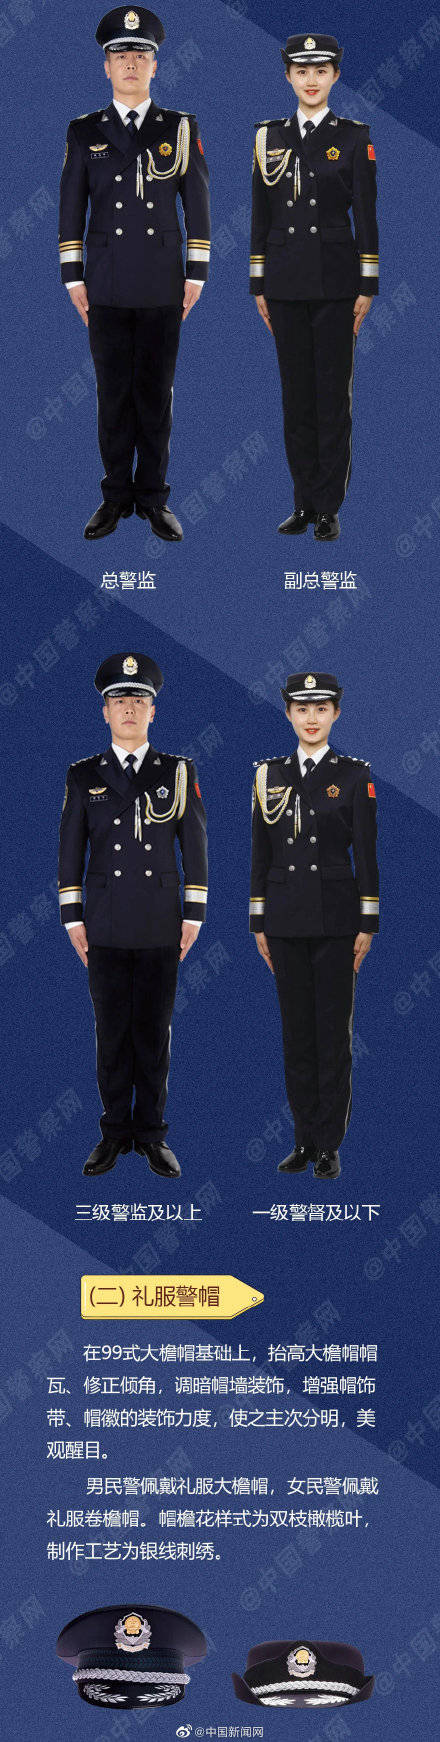 中国人民警察警礼服正式列装_绶带